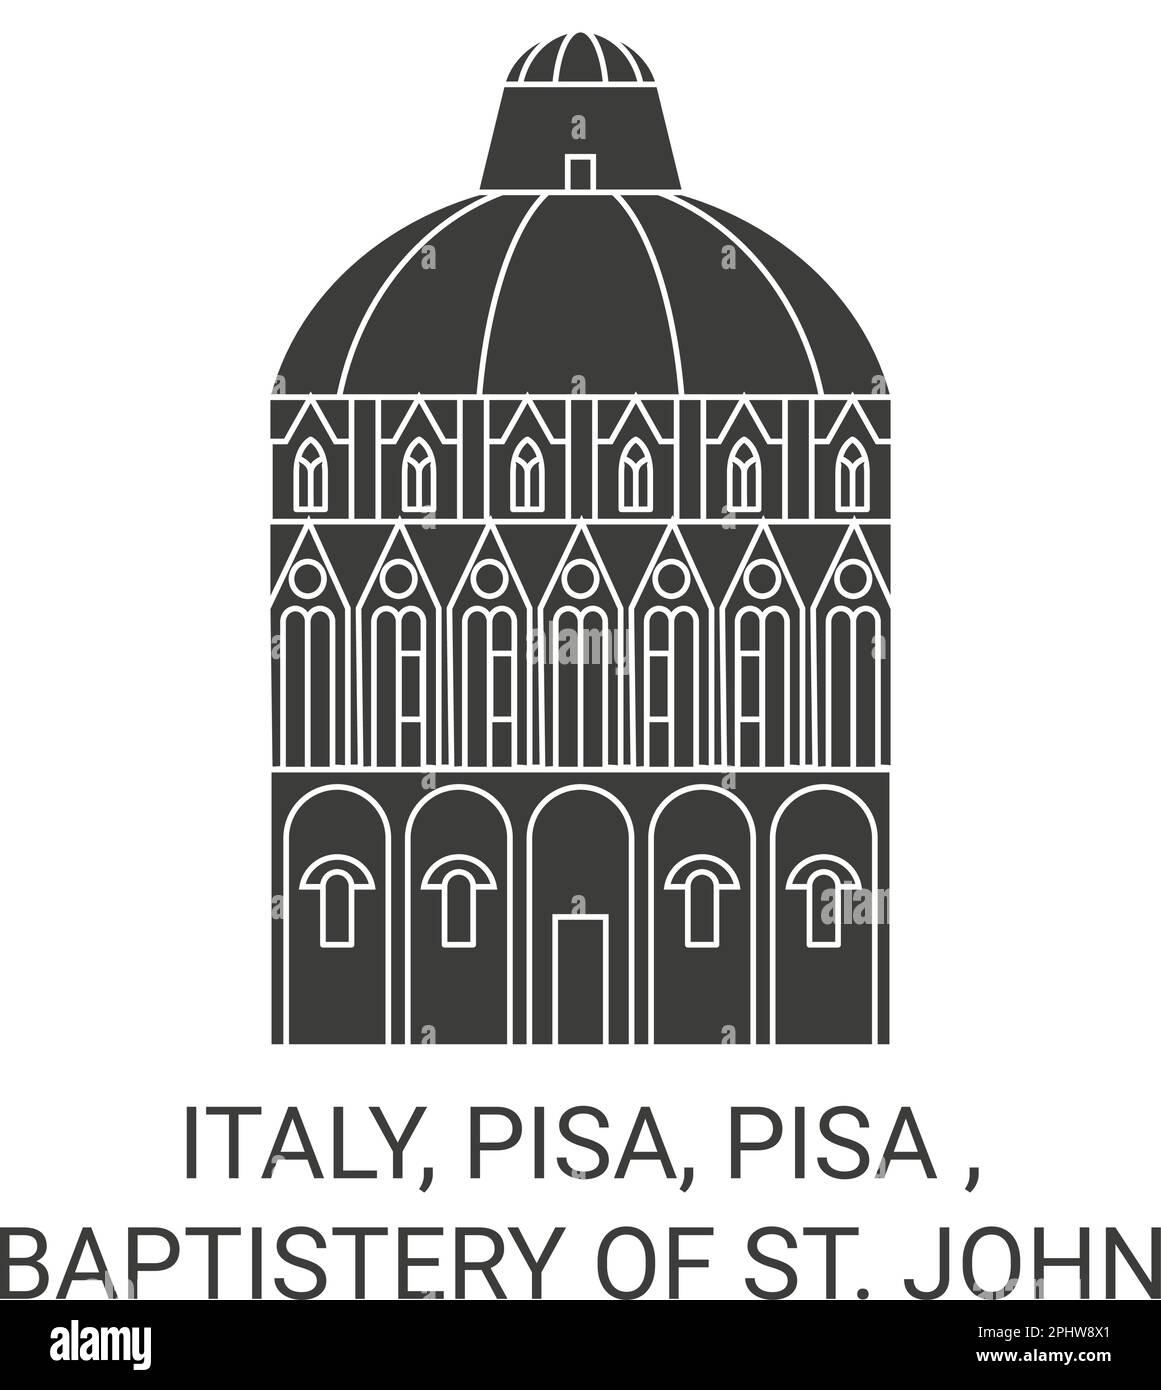 Italy, Pisa, Pisa , Baptistery Of St. John travel landmark vector illustration Stock Vector